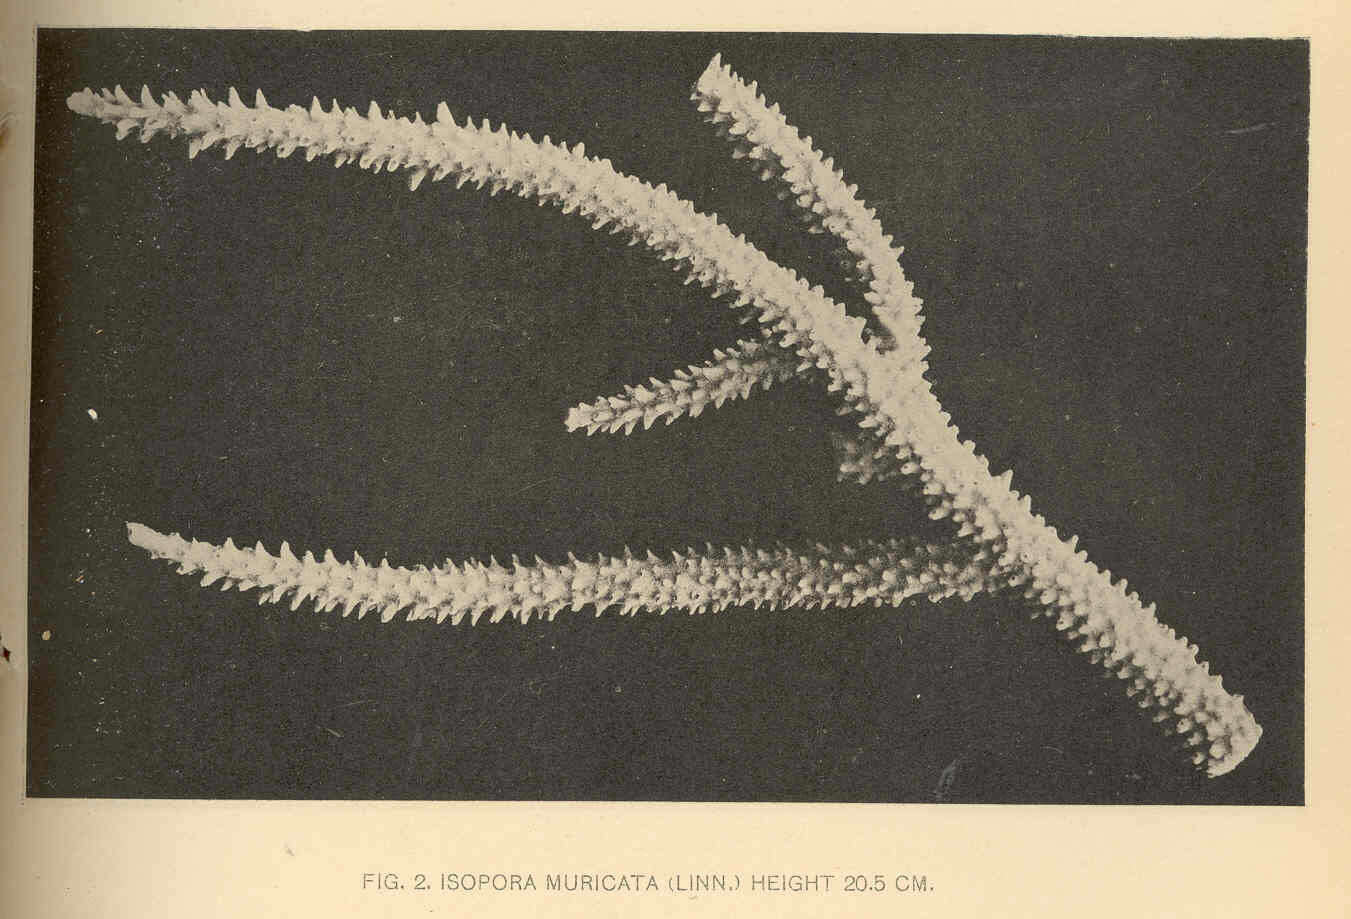 Image de Acroporidae Verrill 1901